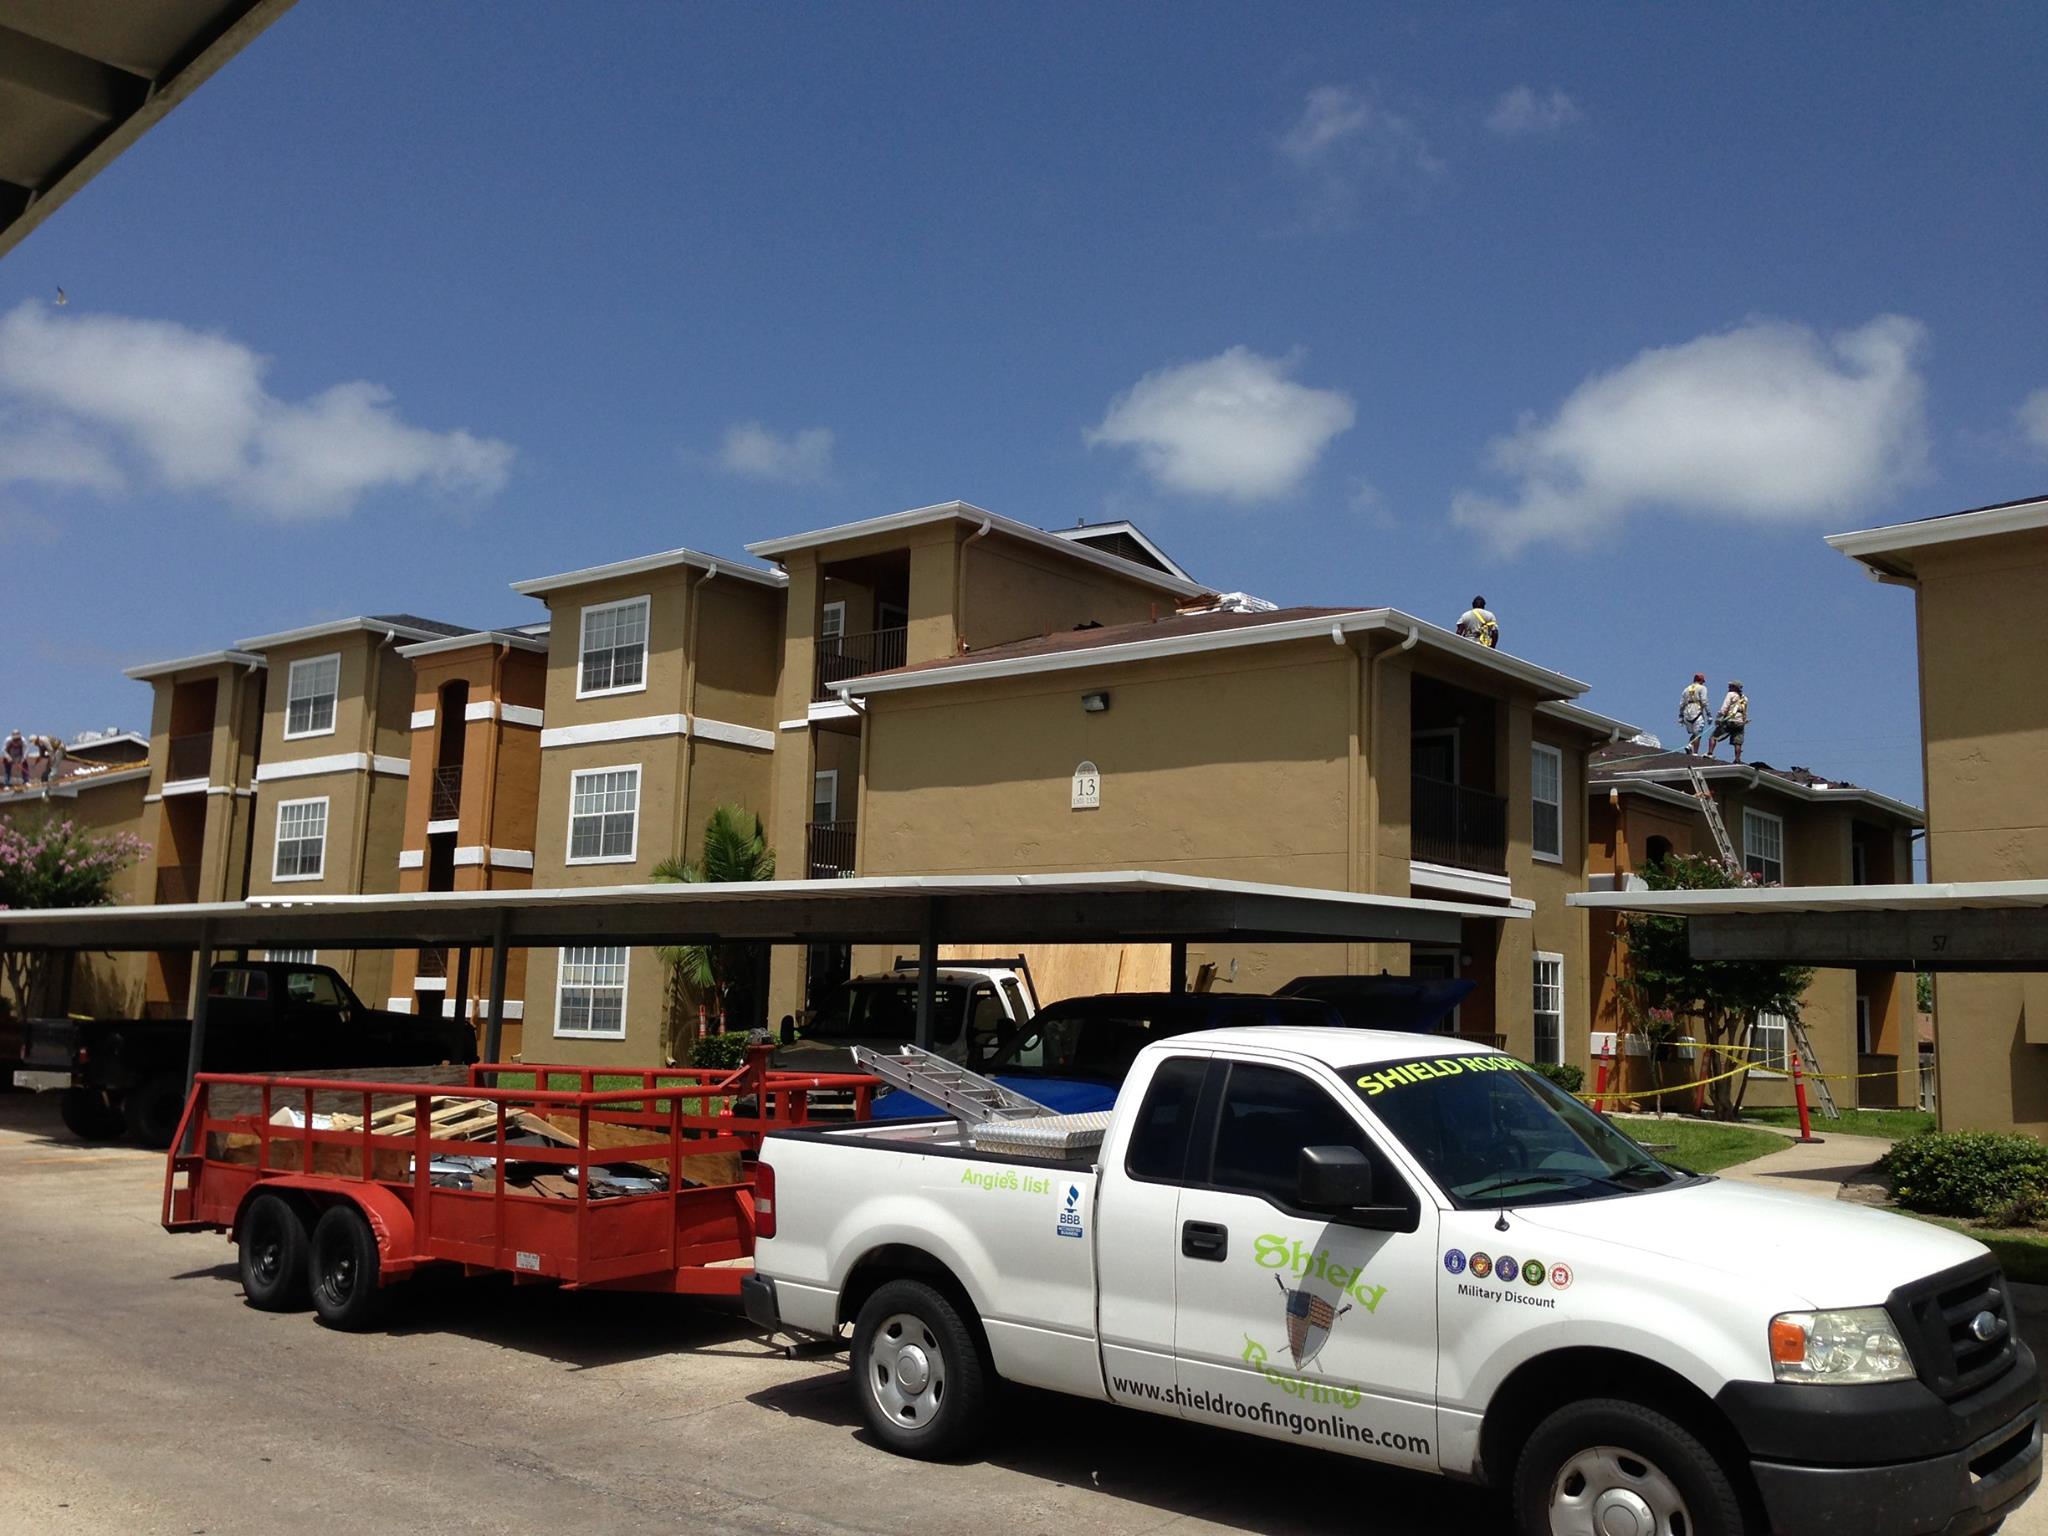   Roofing Contractor San Antonio         